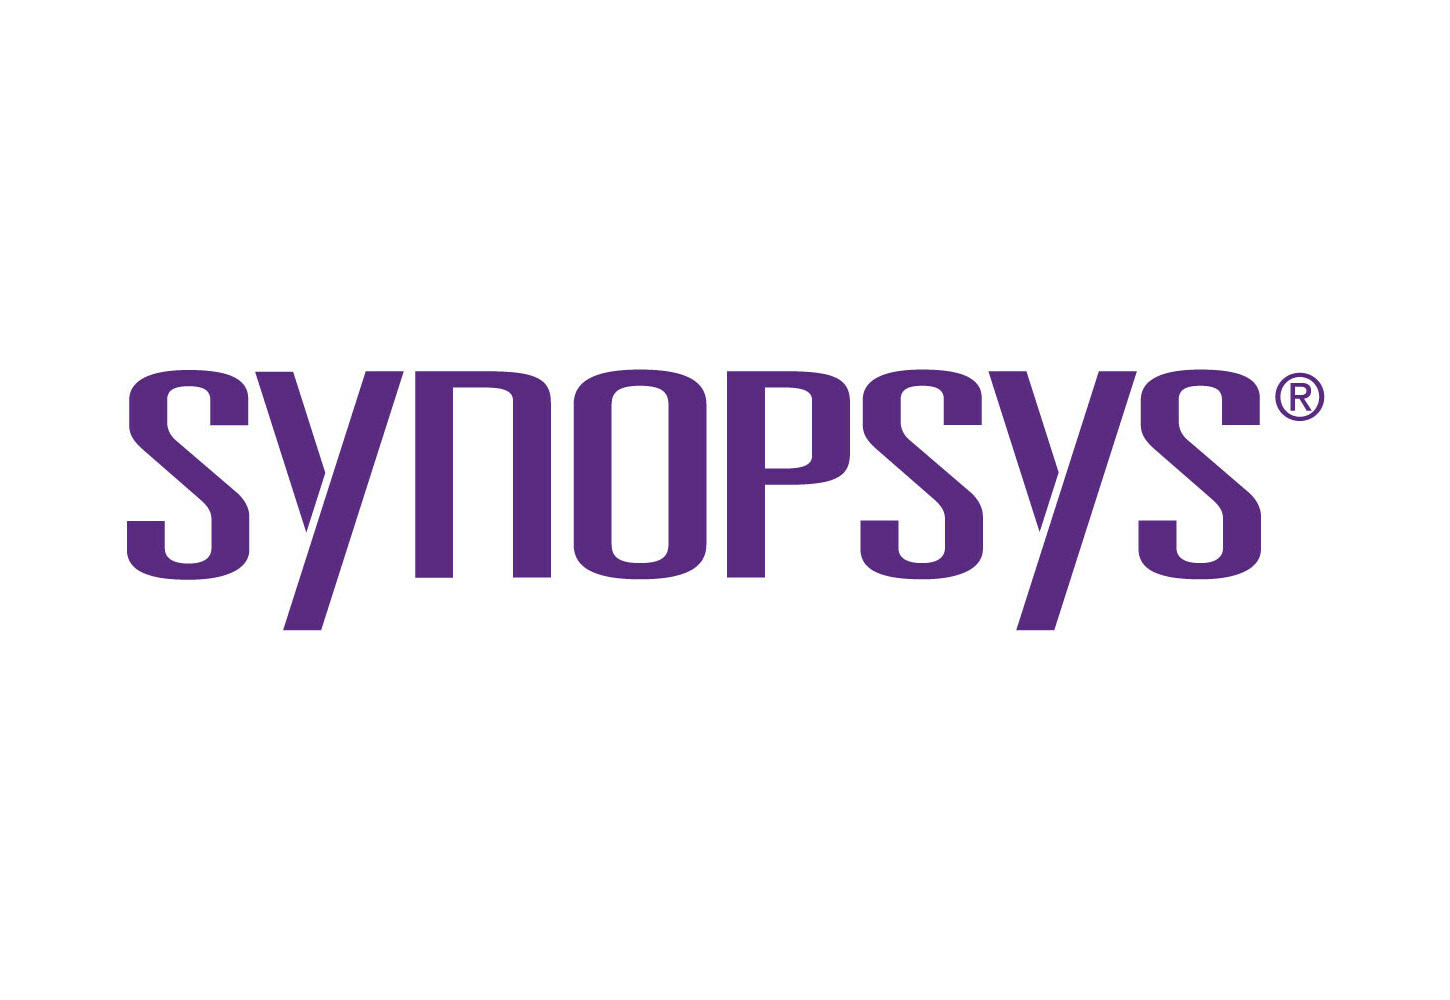 Synopsys (PRNewsfoto/Synopsys)